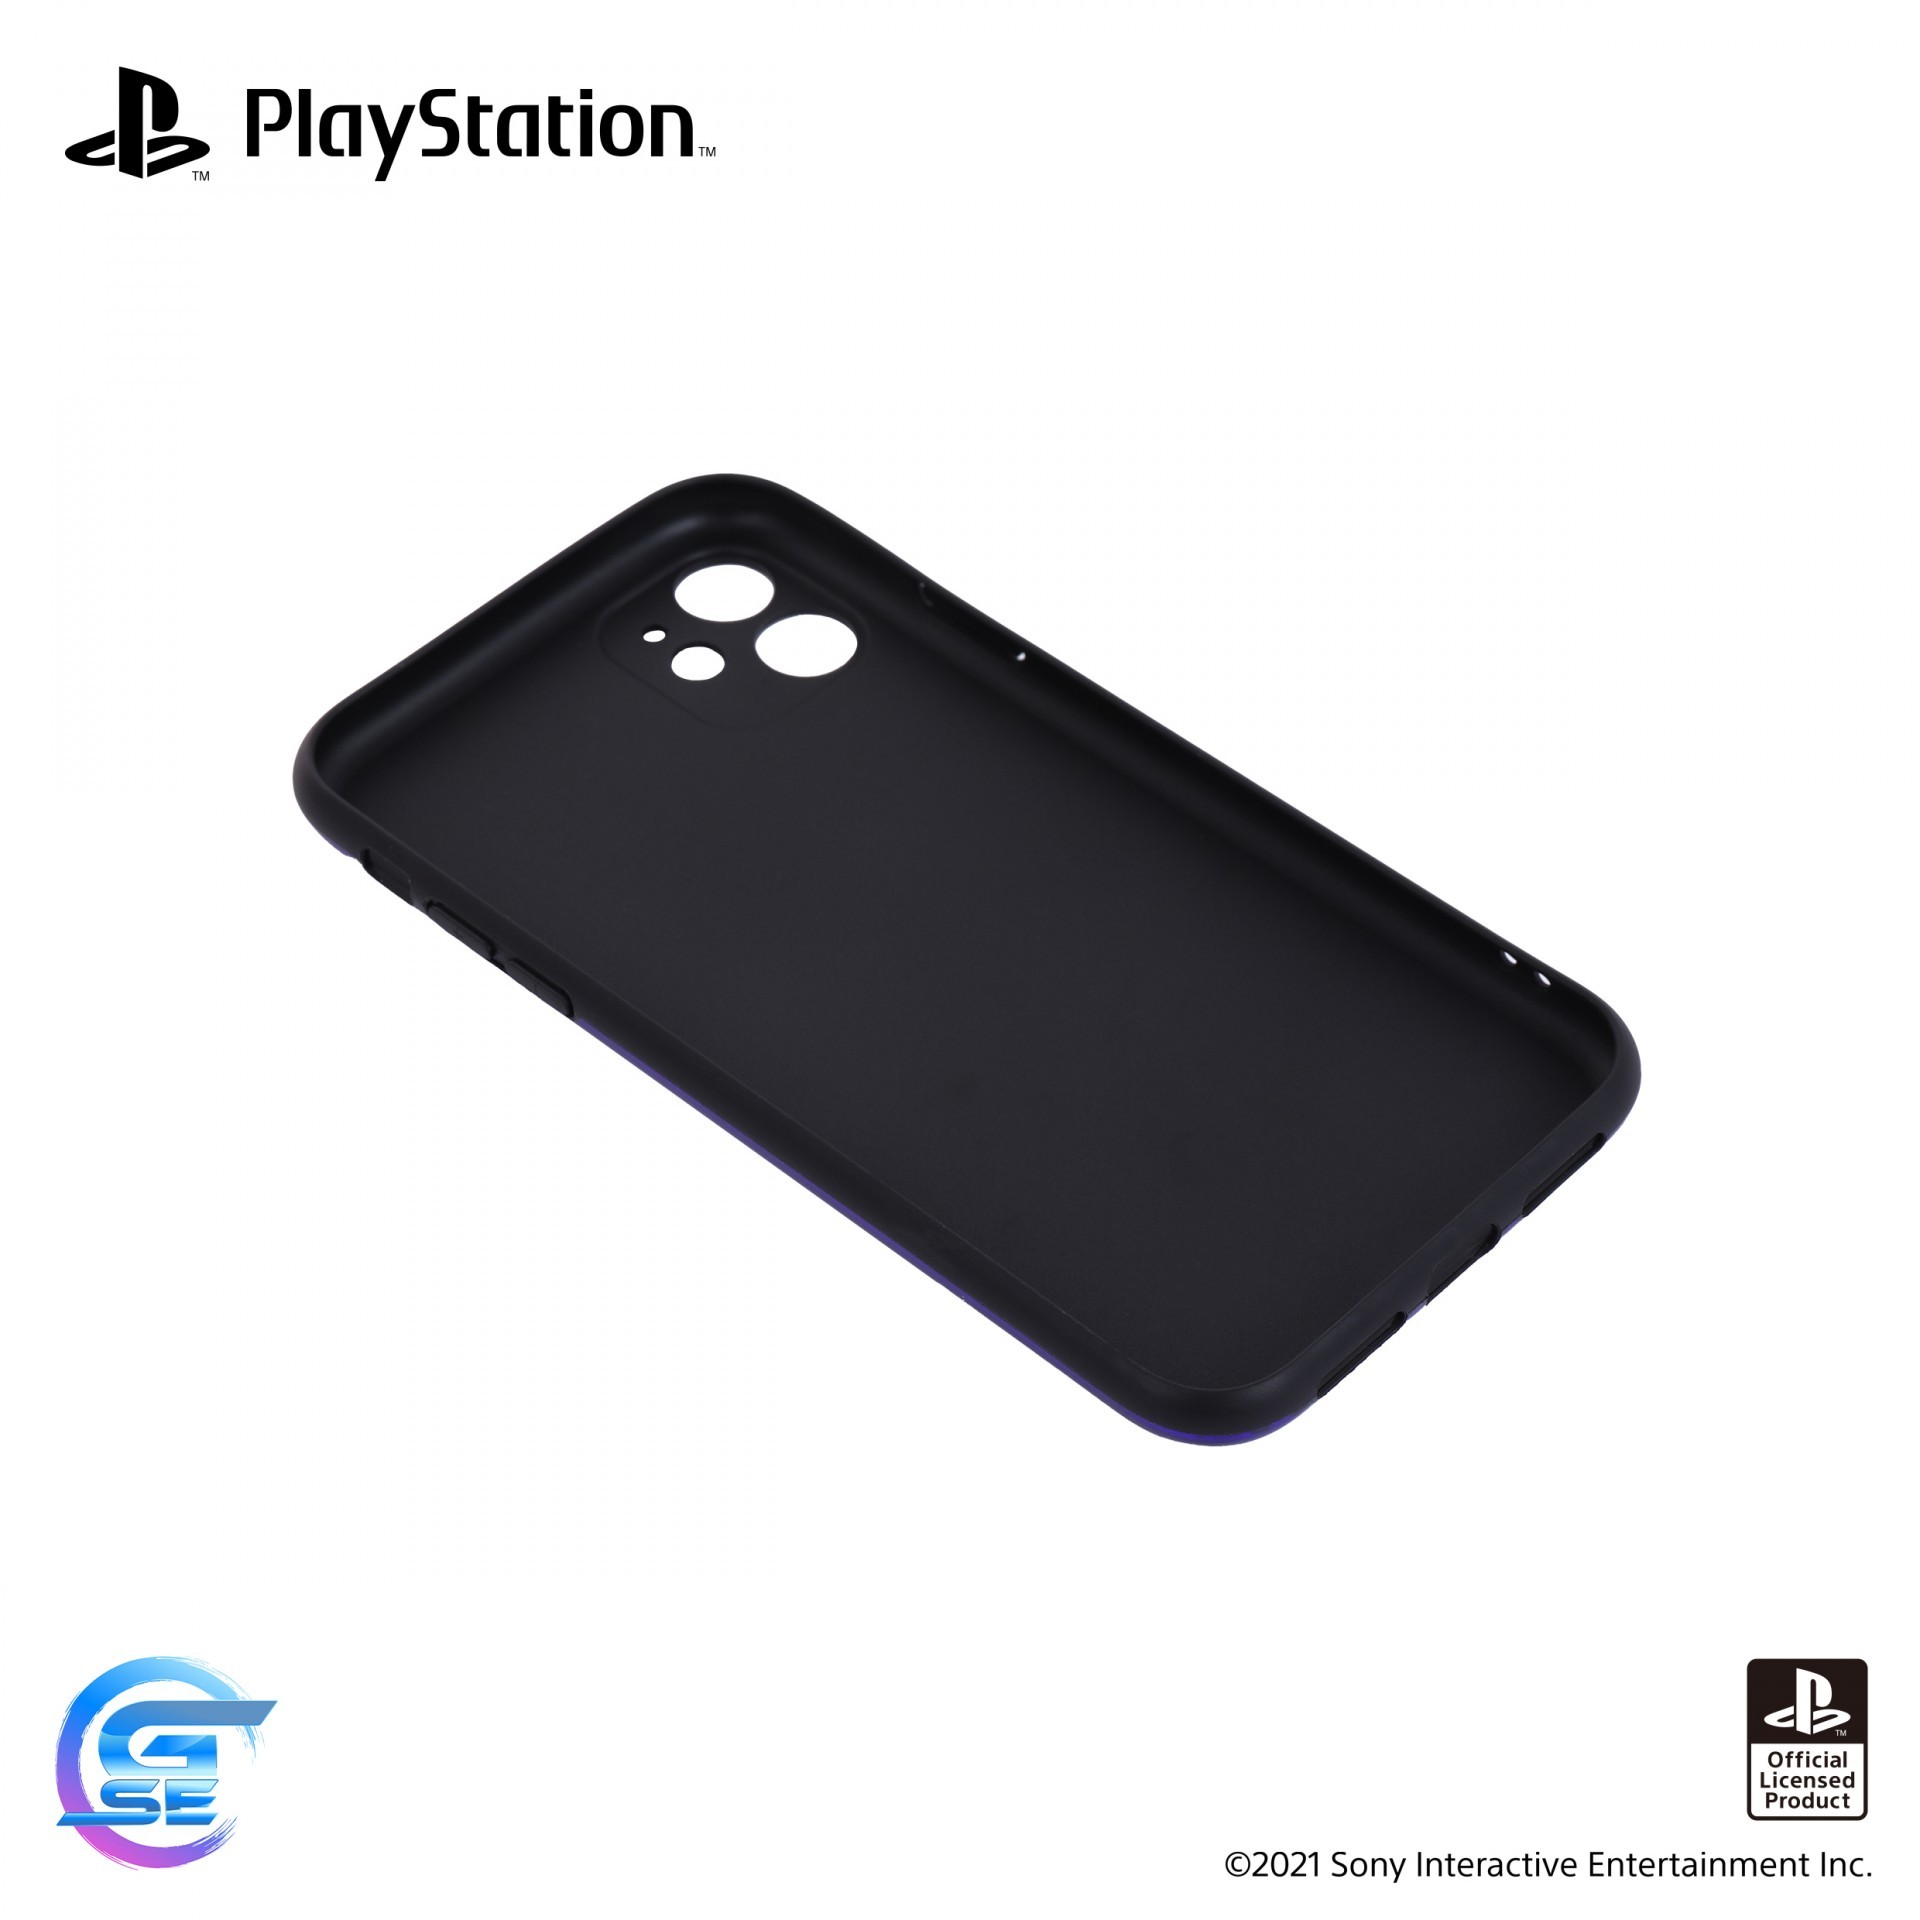 官方授权 PlayStation 主题周边商品 9 月 3 日在台上市